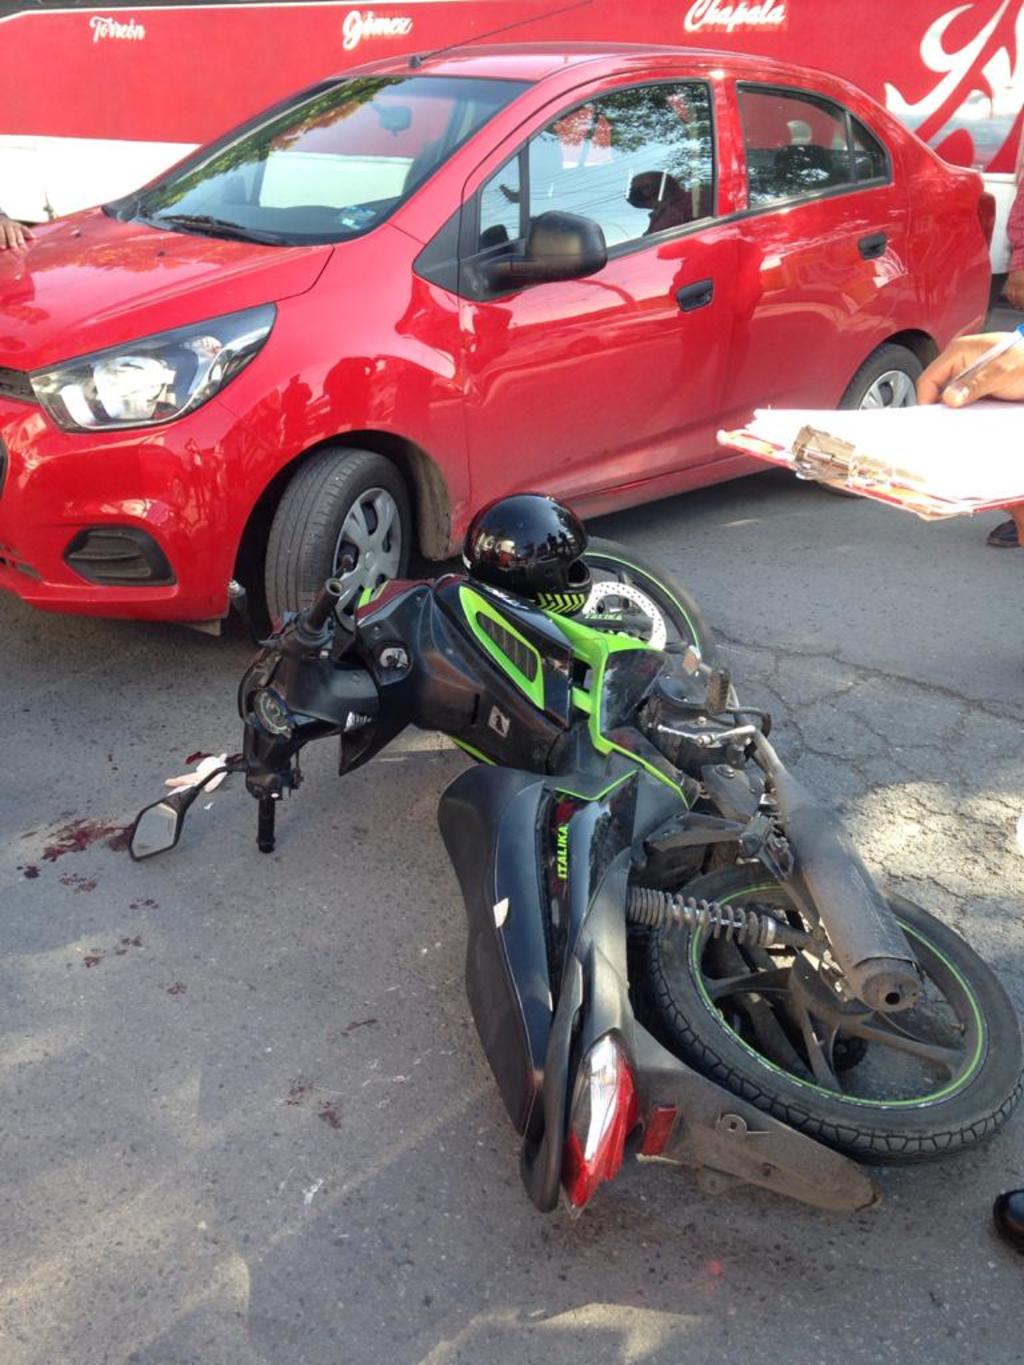 El joven lesionado viajaba a bordo de una motocicleta de la marca Italika de color verde con negro.